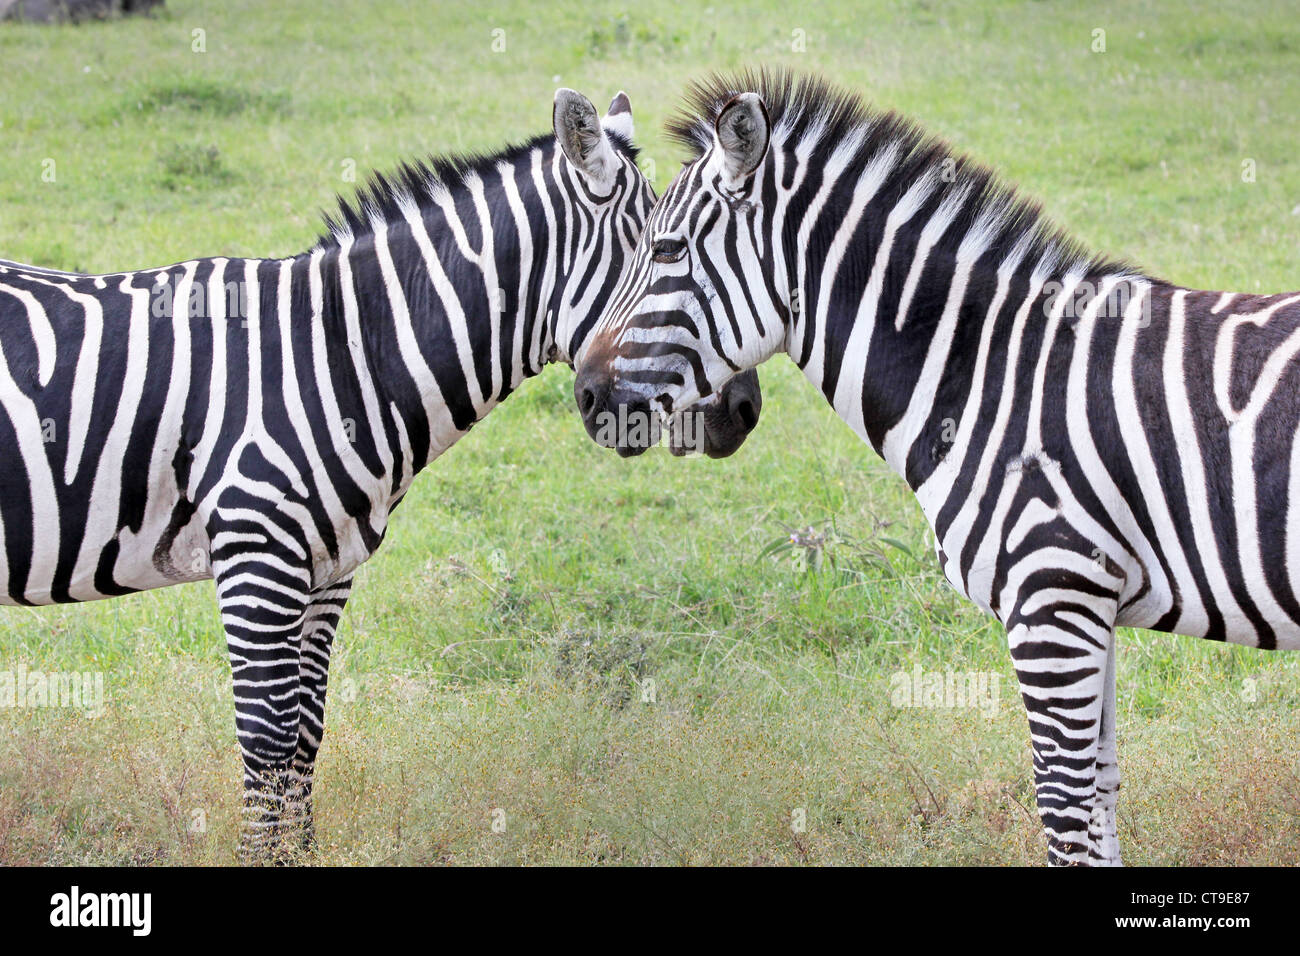 Deux WILD Zebra (Equus quagga) créer une symétrie parfaite et l'harmonie tout en se tenant face à face au Kenya, Afrique. Banque D'Images